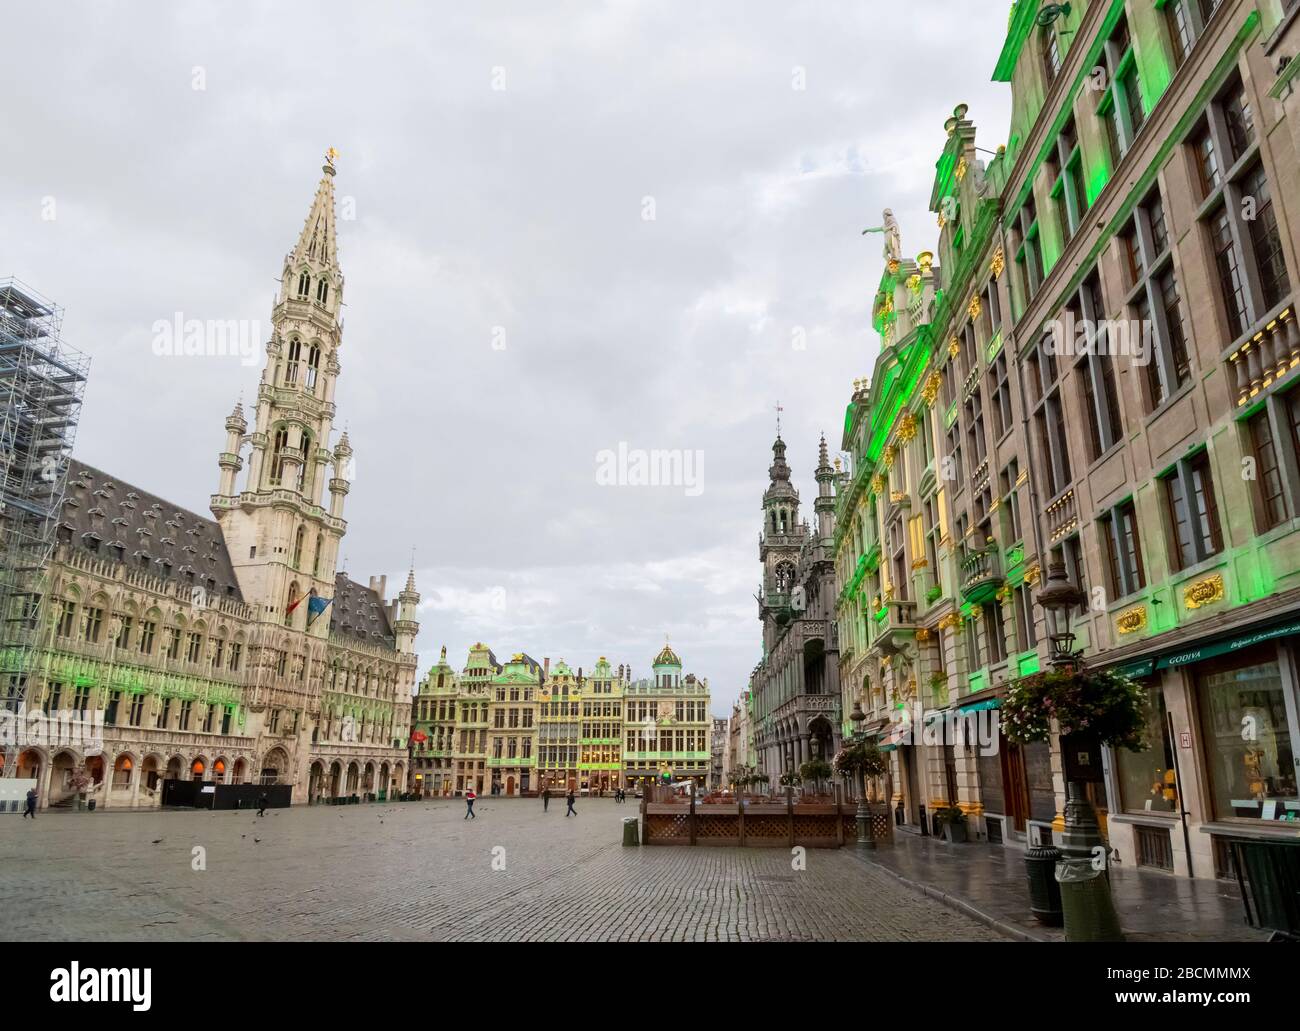 Ein übergiebelter Morgen am Grand Place, dem zentralen Platz in der Stadt Brüssel, Belgien. Stockfoto